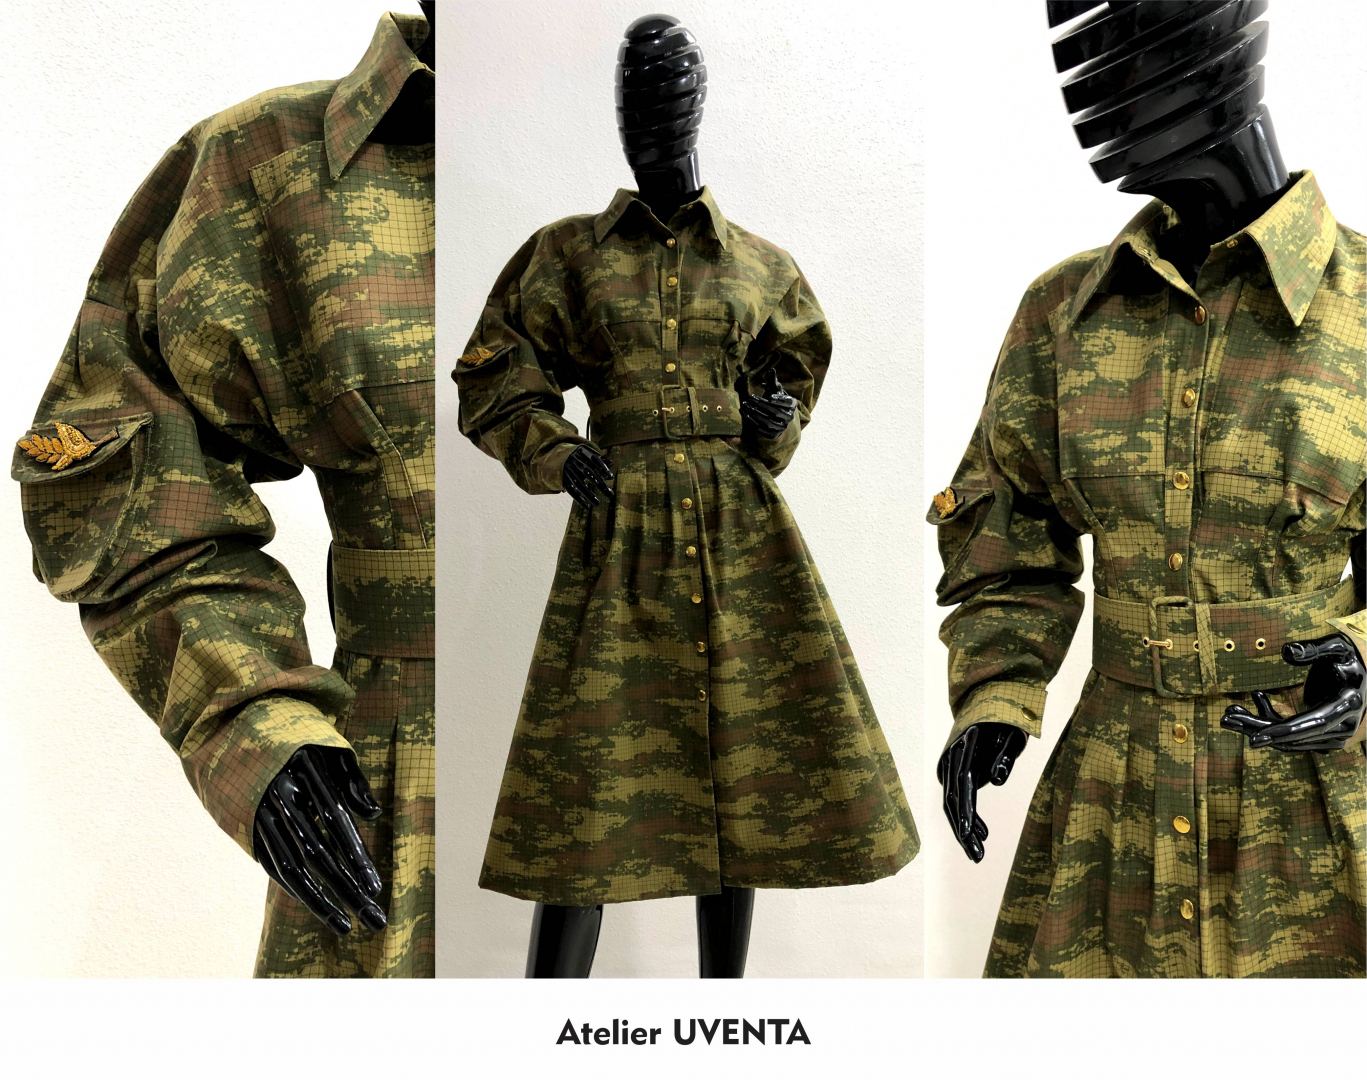 Азербайджанские дизайнеры представили коллекцию из военного камуфляжа в поддержку армии (ВИДЕО, ФОТО)